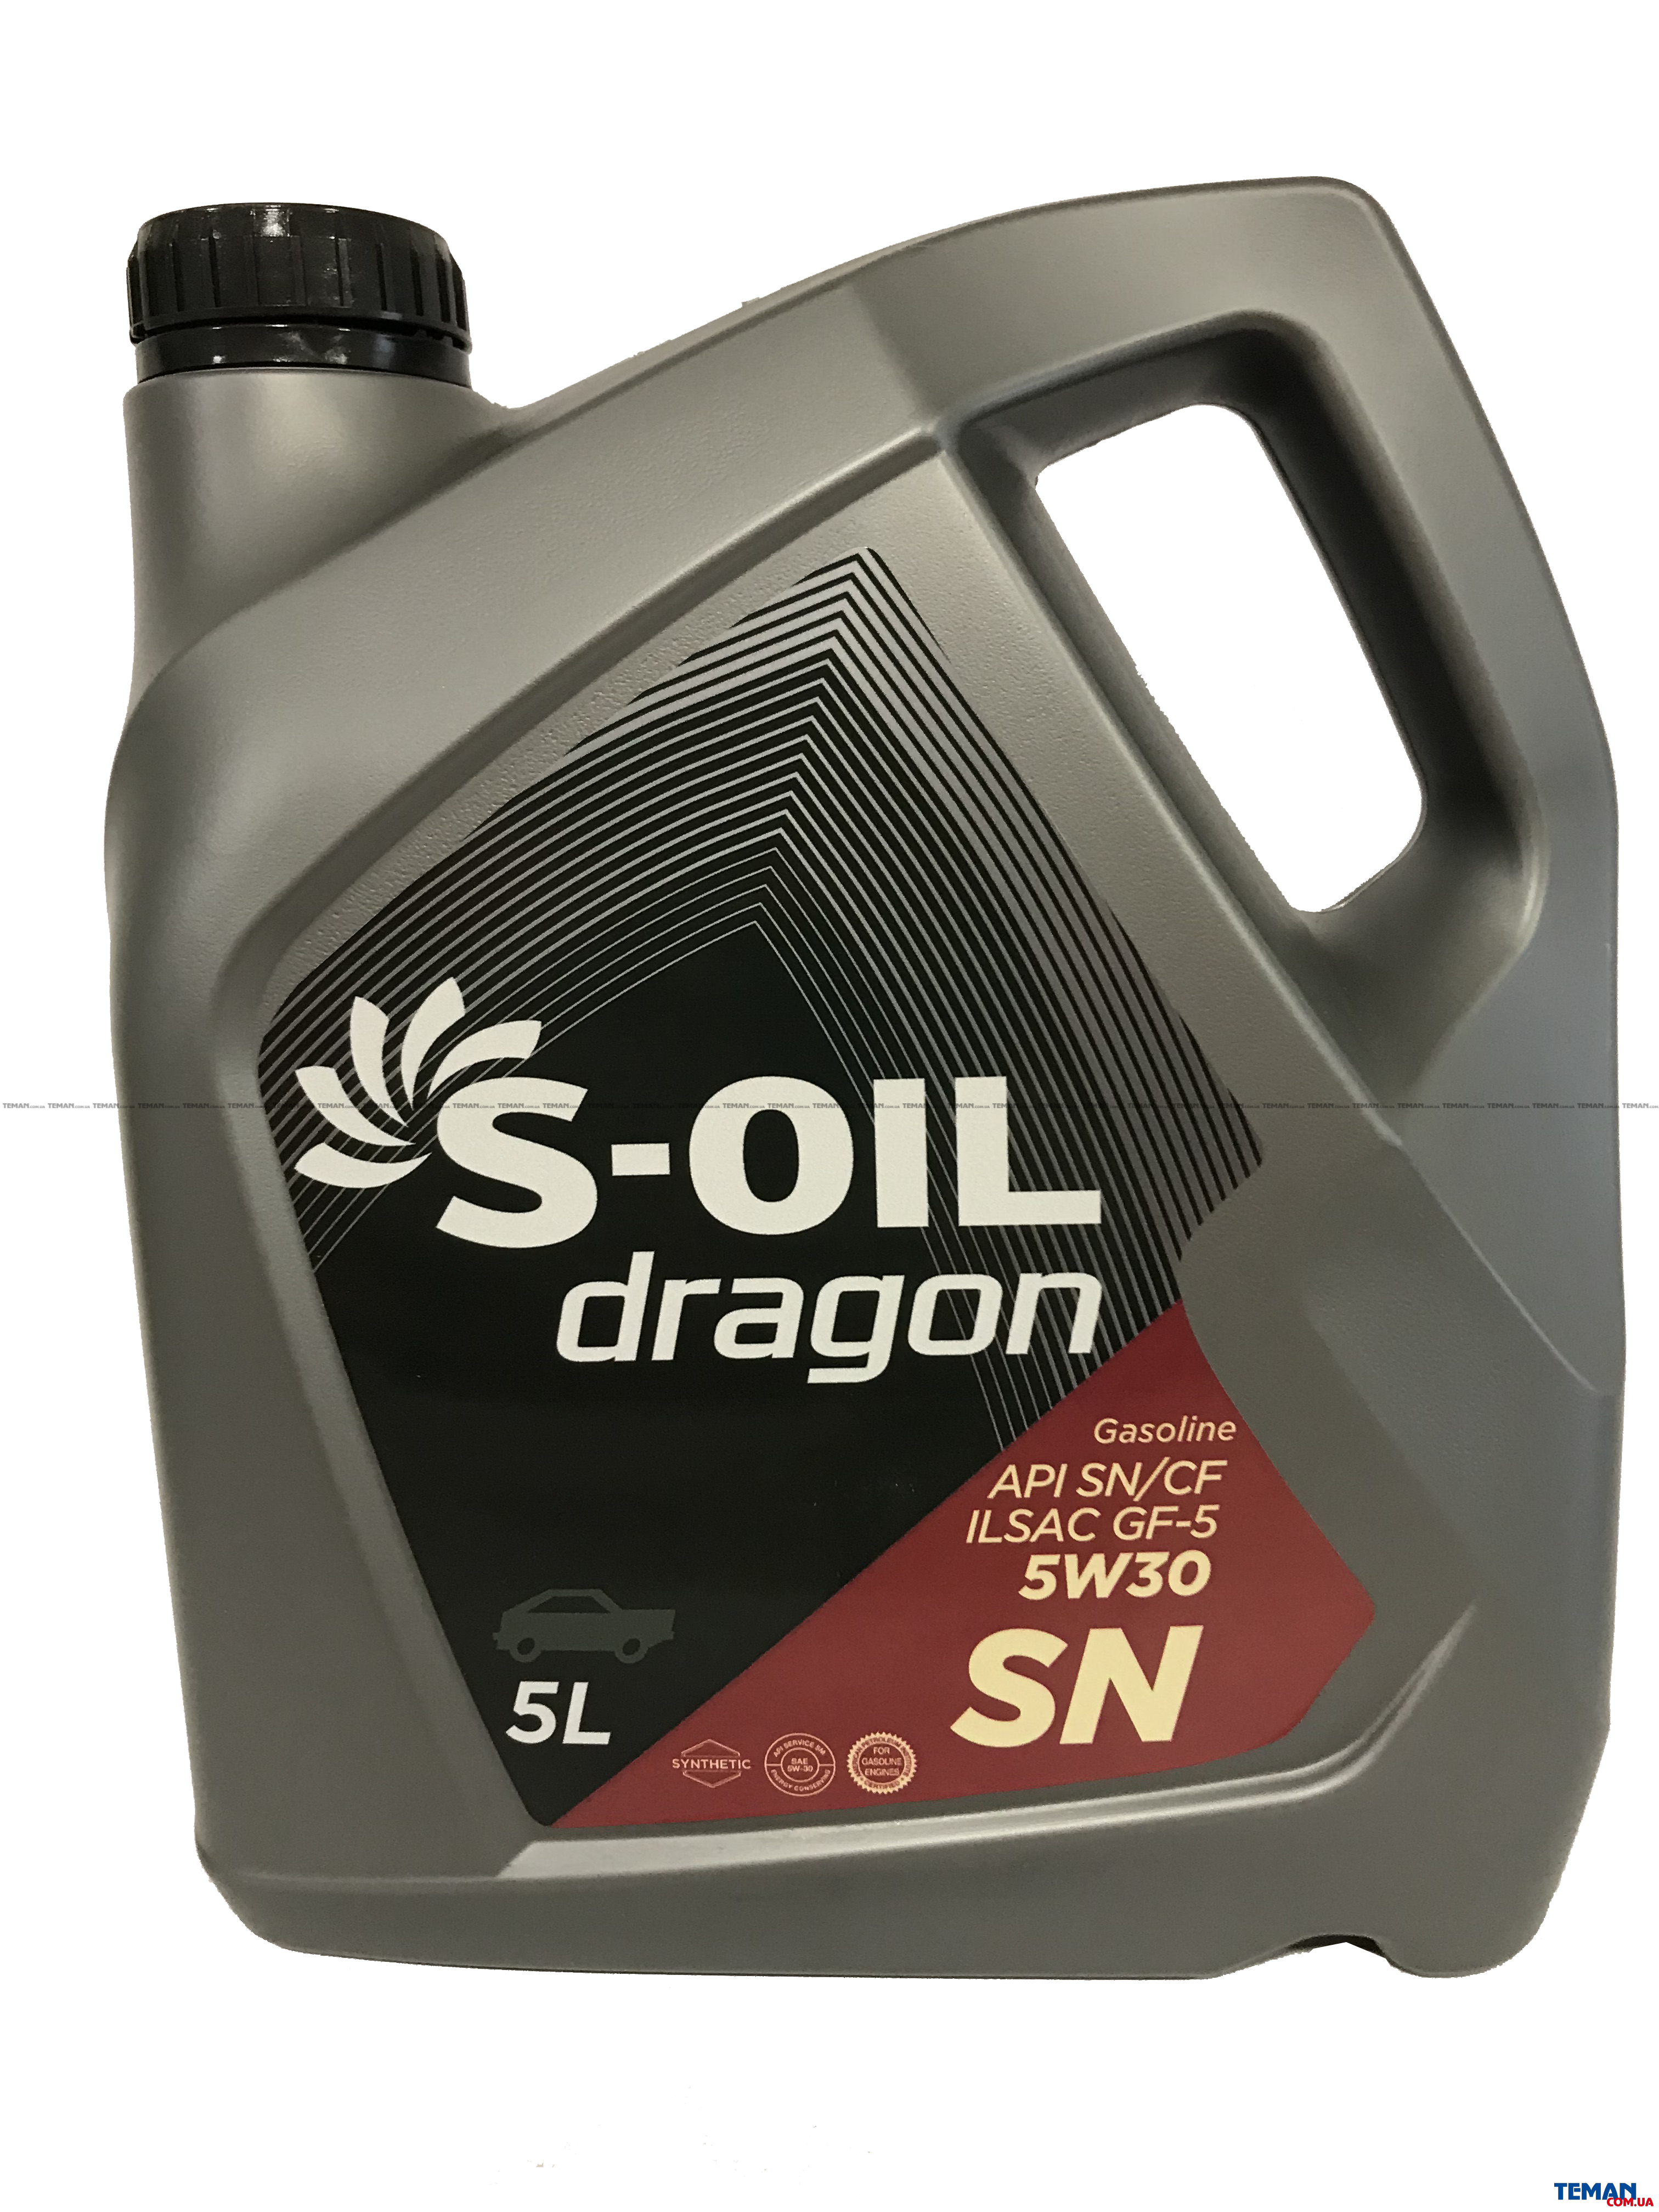 Моторное масло 5w30 екатеринбург. S-Oil Seven Dragon 5w30. S Oil Dragon 5w30 SN. Масло моторное 5w30 Dragon. S-Oil Dragon 5w-30 SN gf-5.